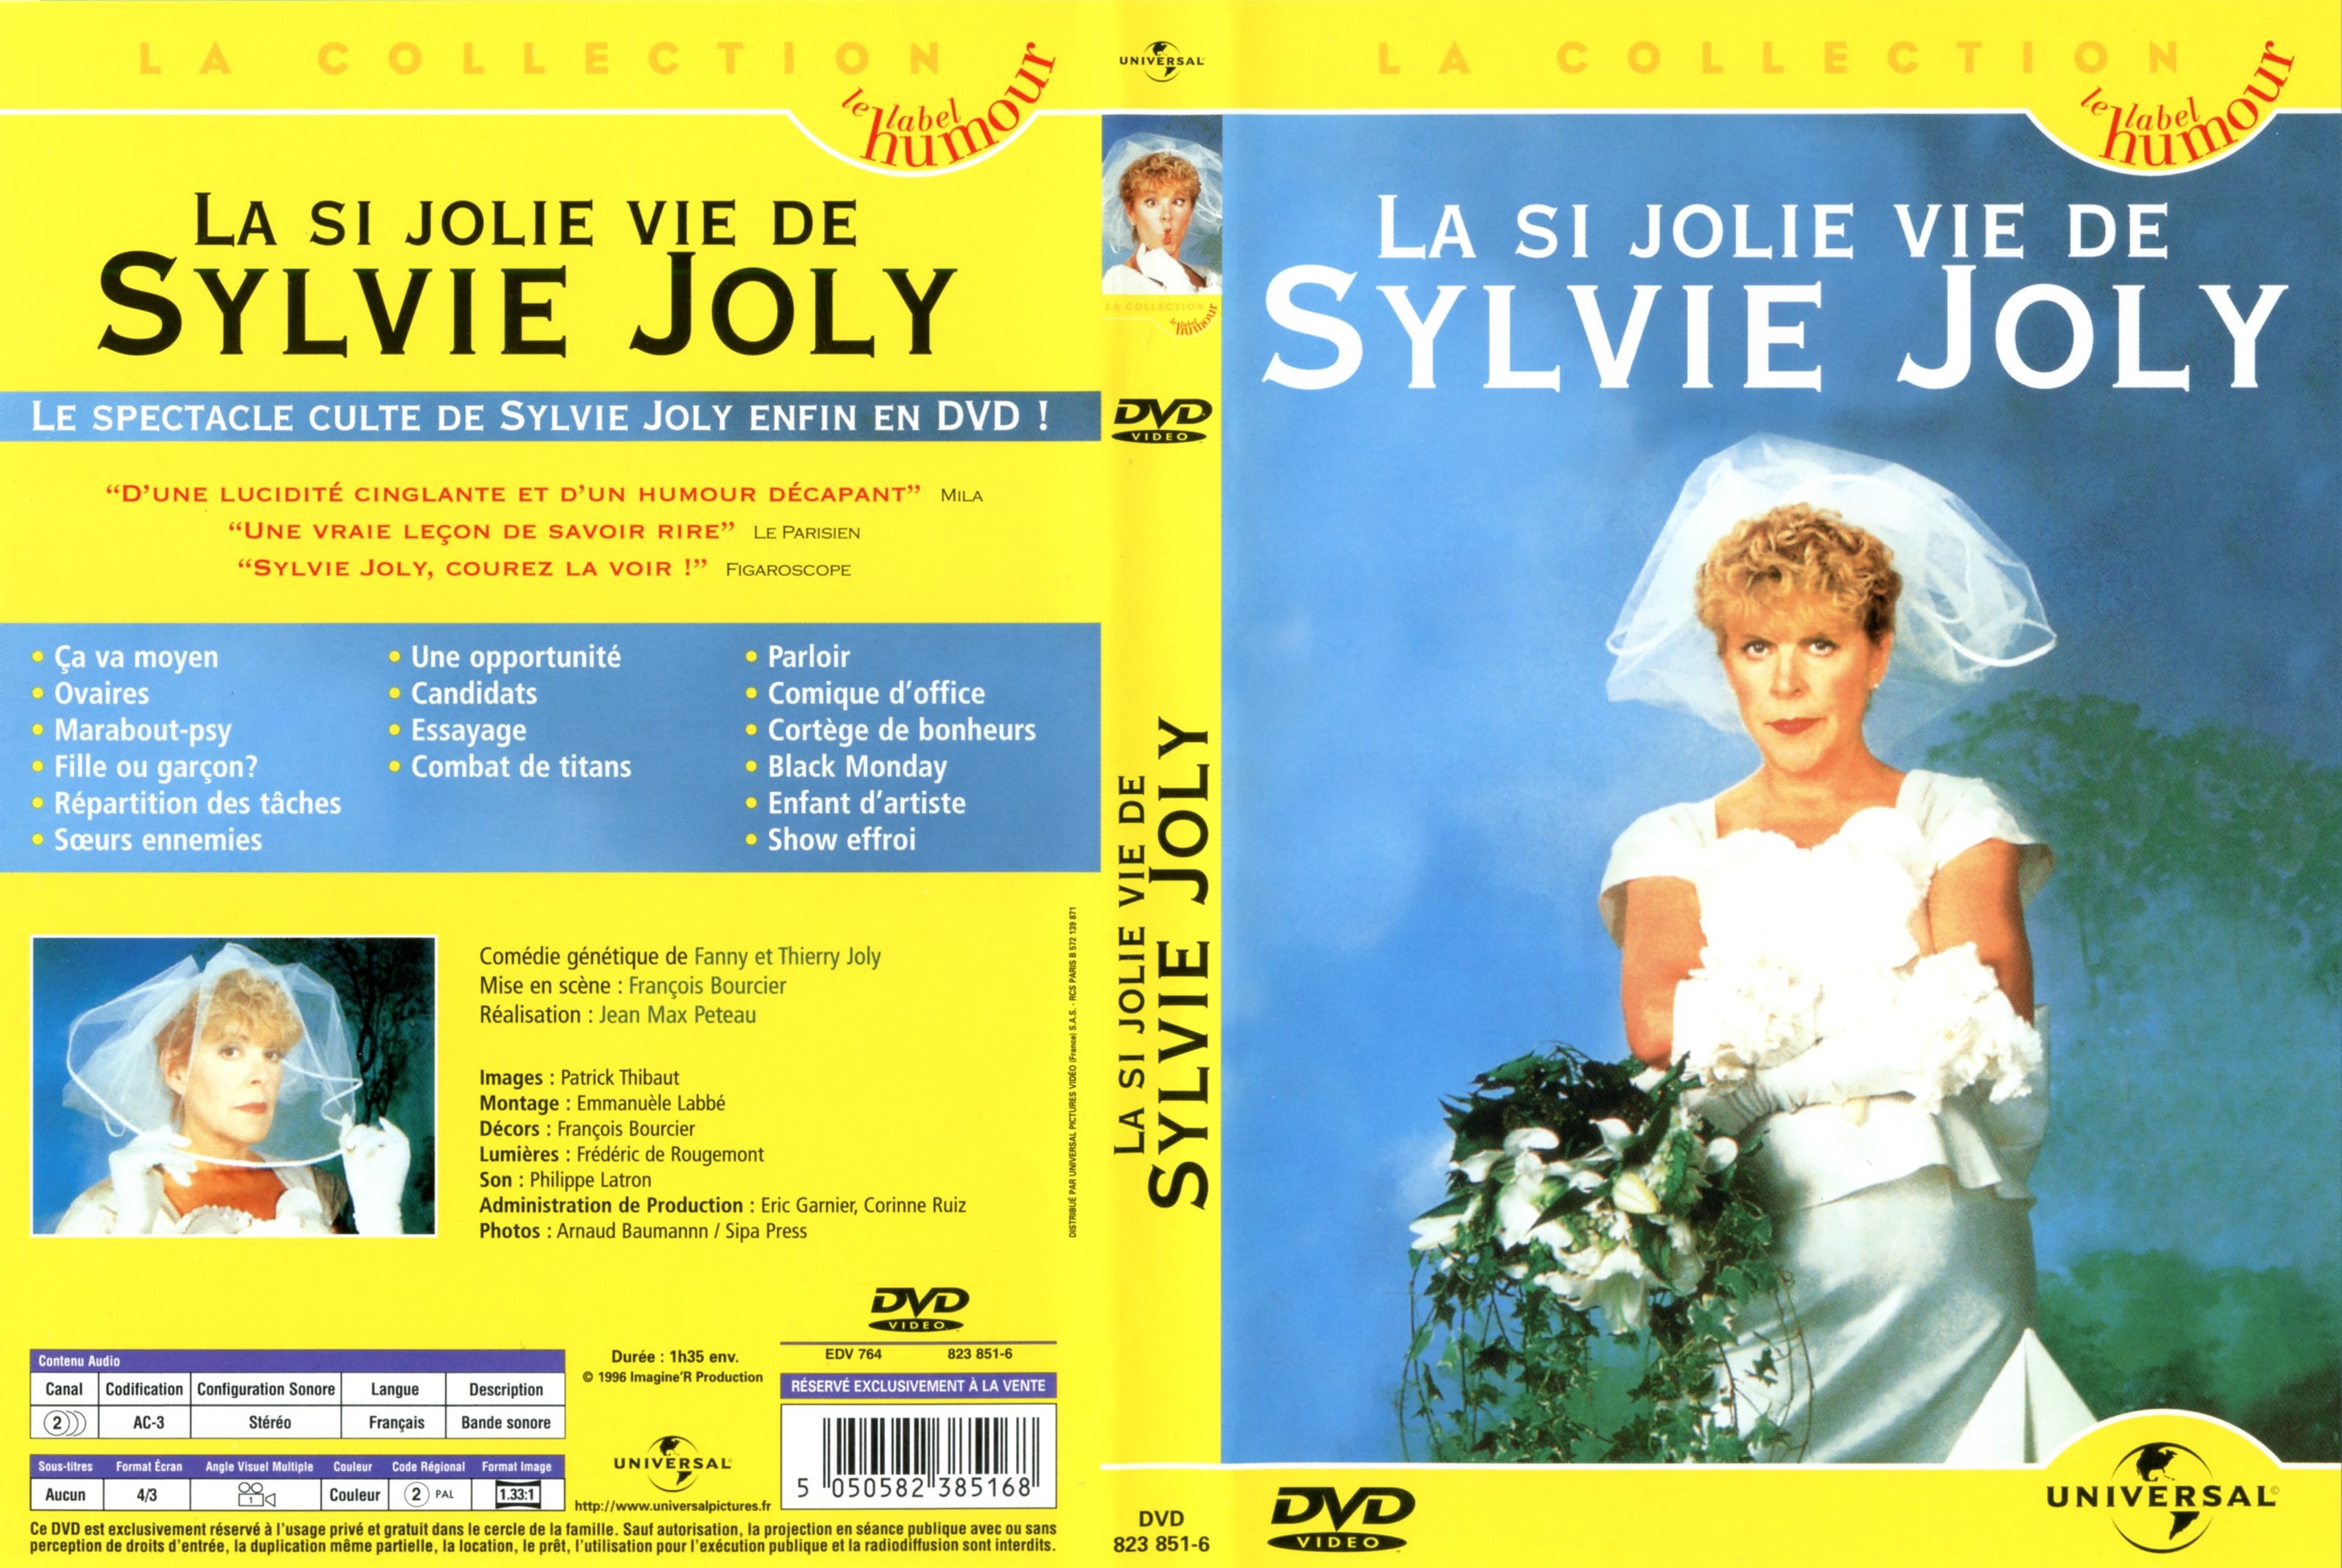 Jaquette DVD La si jolie vie de Sylvie Jolie